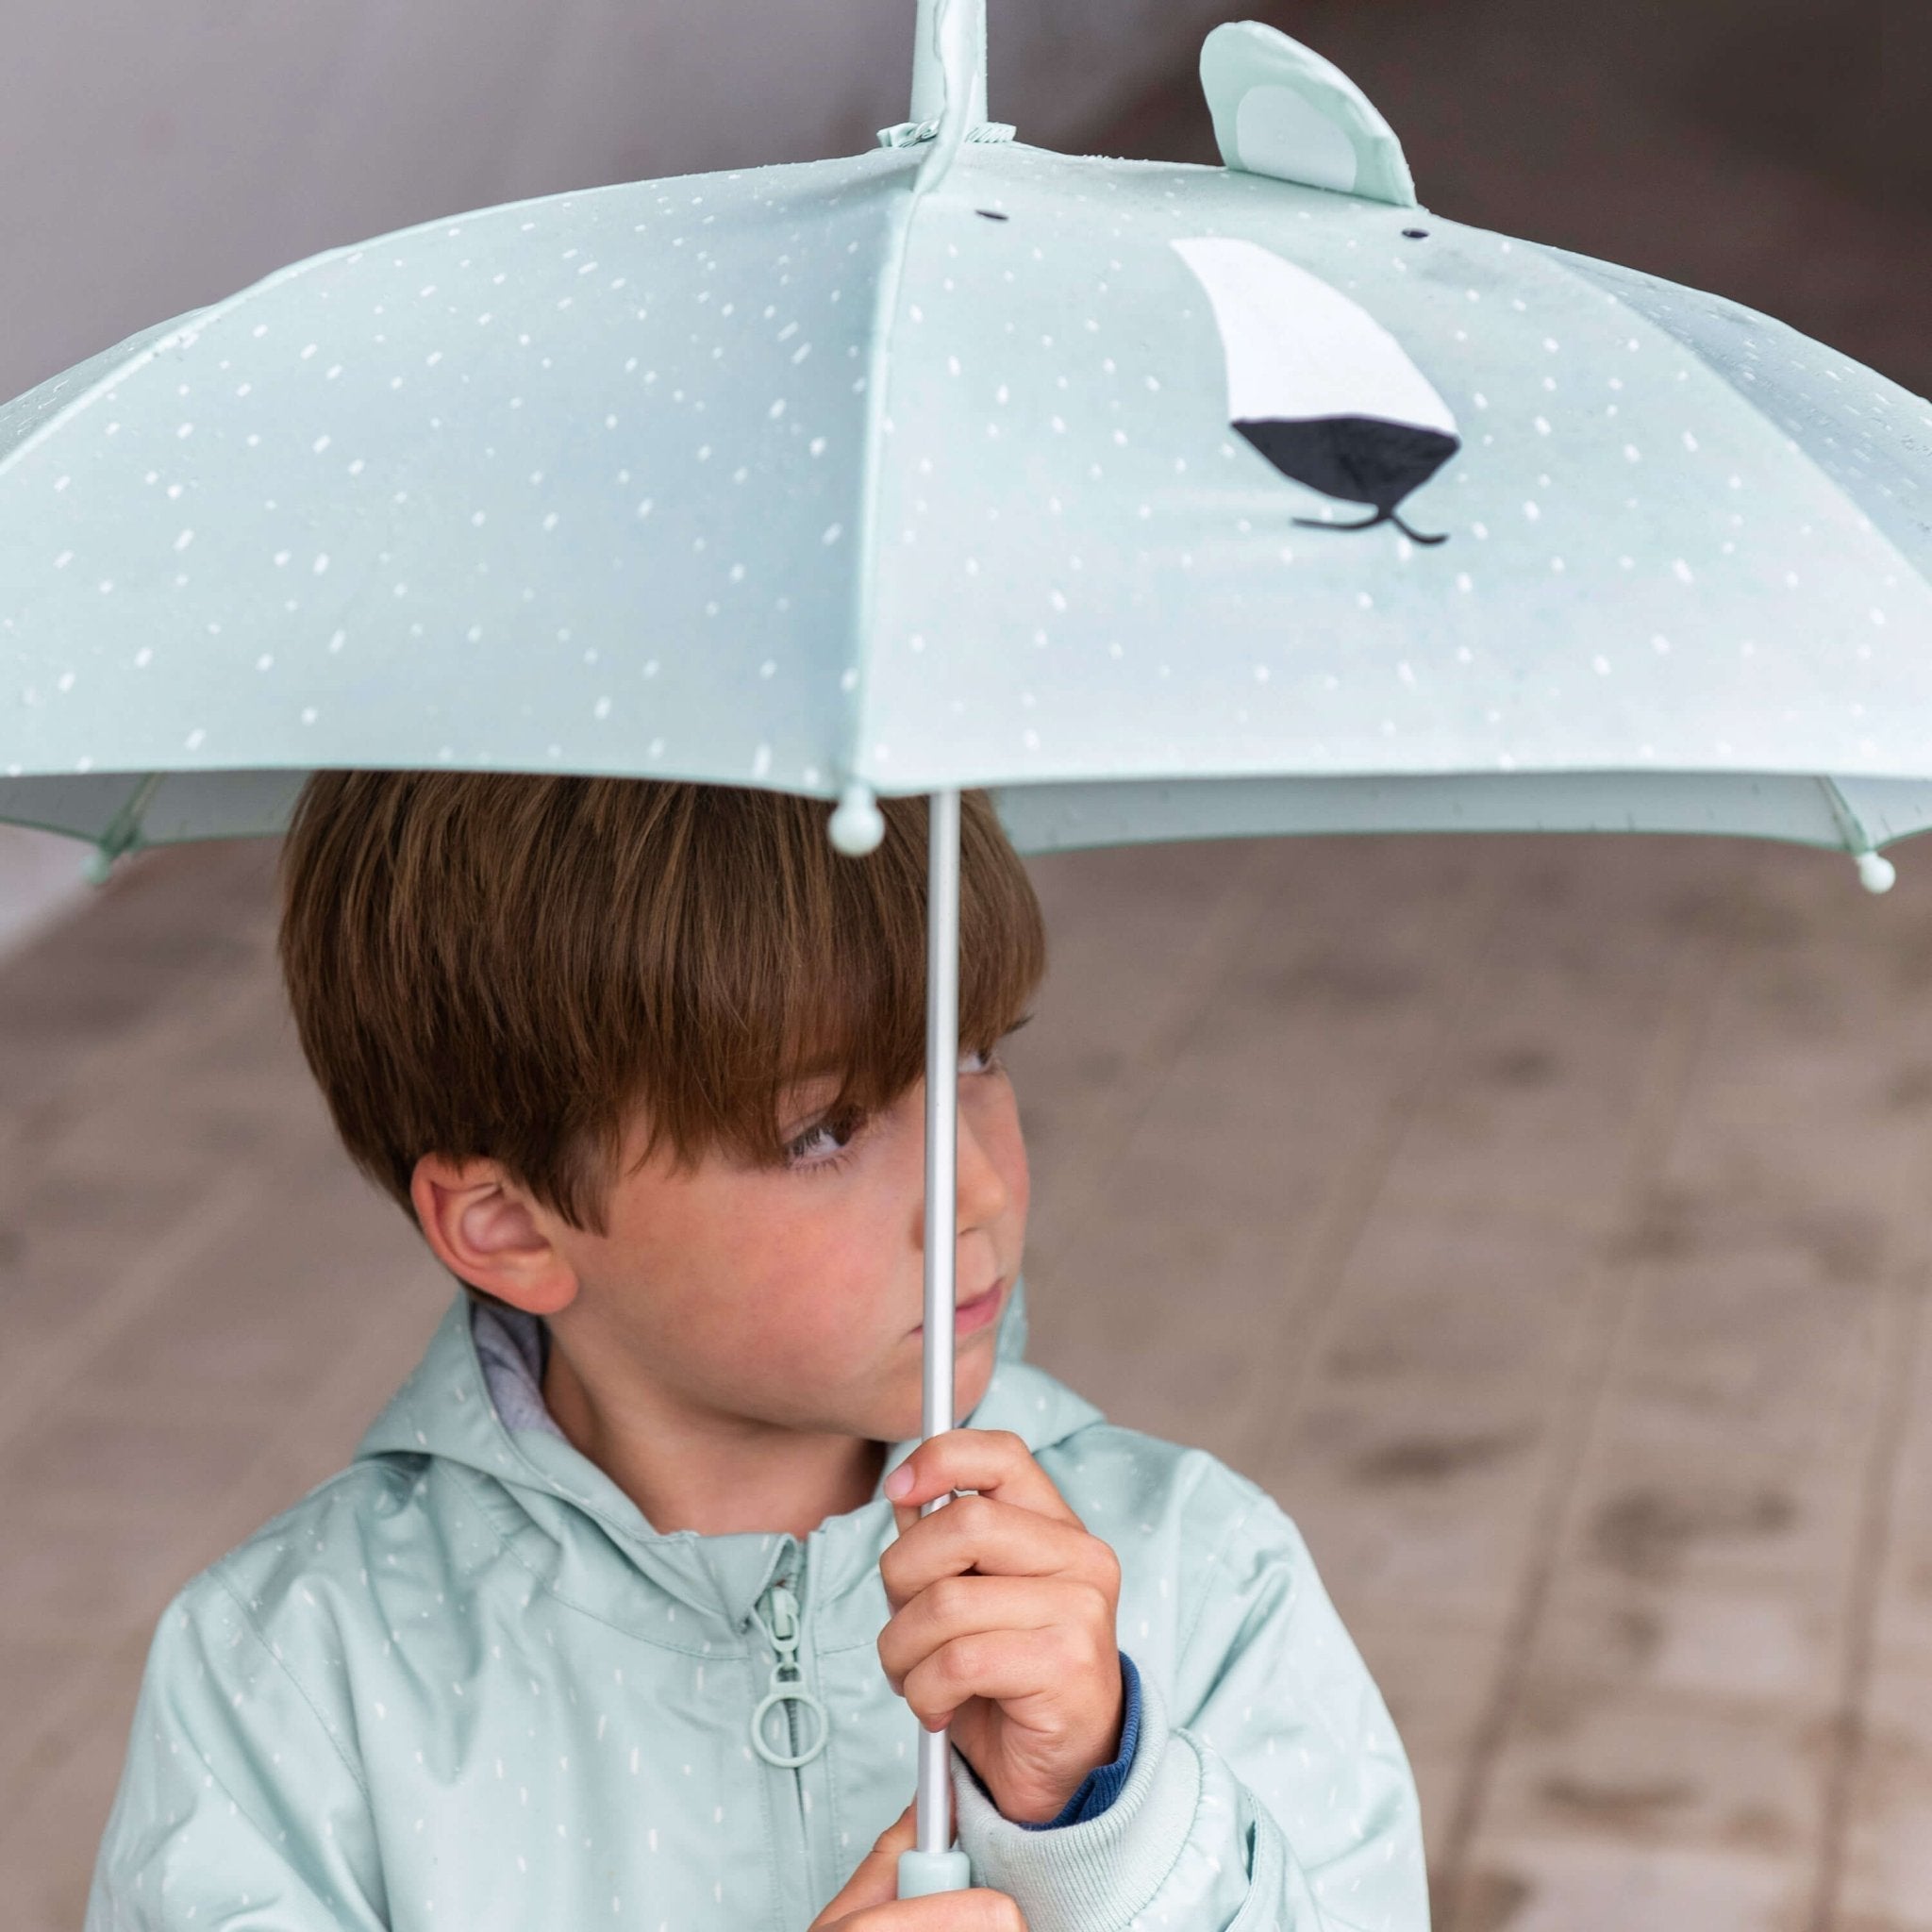 Trixie **Melodie im Regen** 🎶 Tierdesign Regenschirm aus recyceltem Material - Für kleine Abenteurer im Regenbogenland! 🌈🌧️